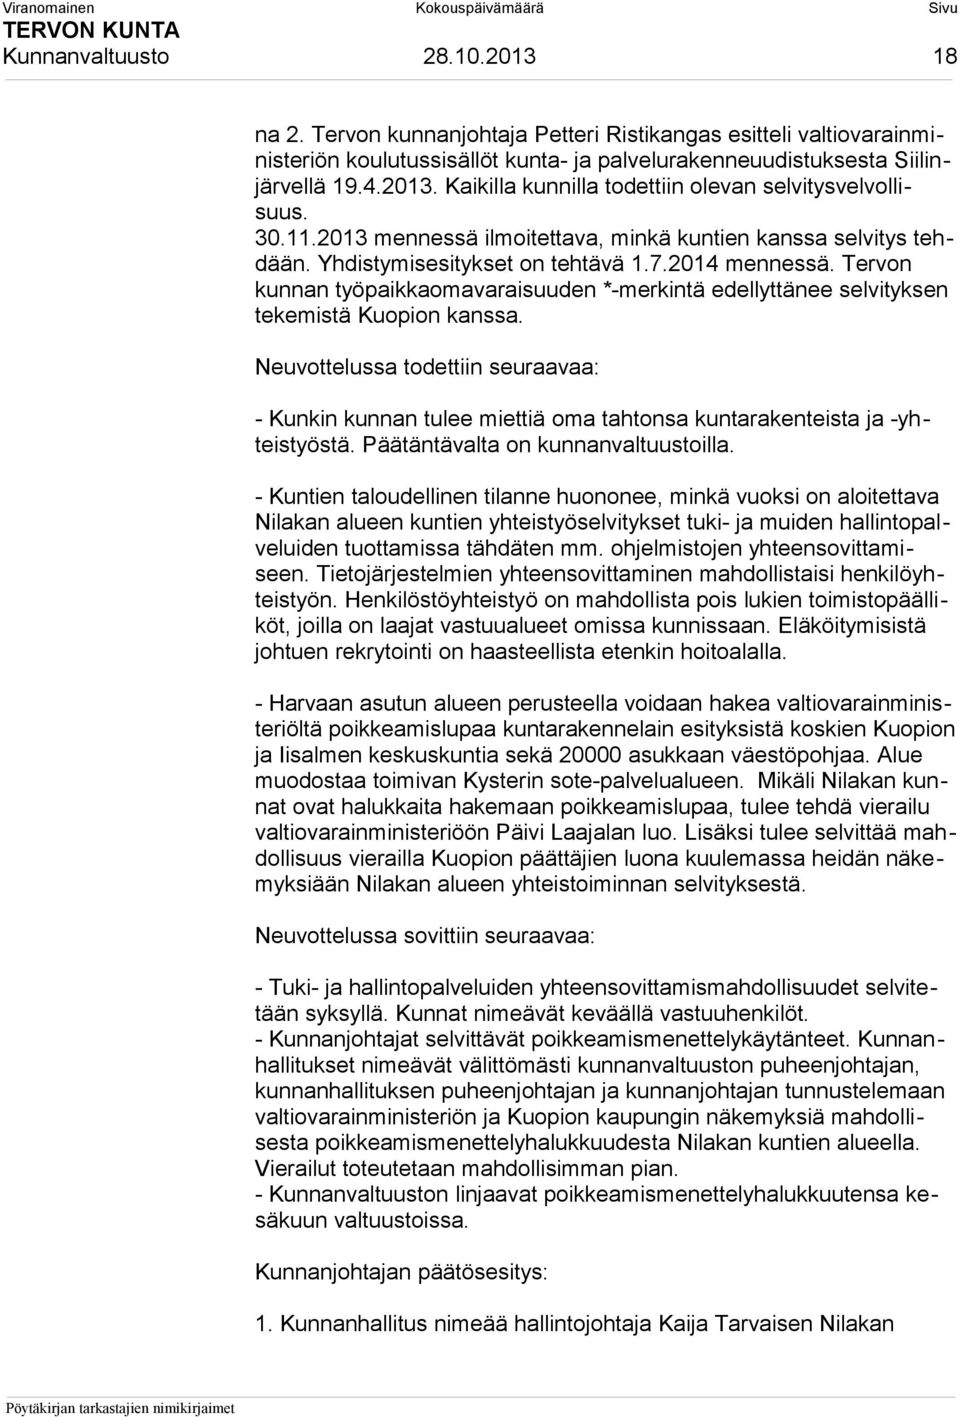 Tervon kunnan työpaikkaomavaraisuuden *-merkintä edellyttänee selvityksen tekemistä Kuopion kanssa.